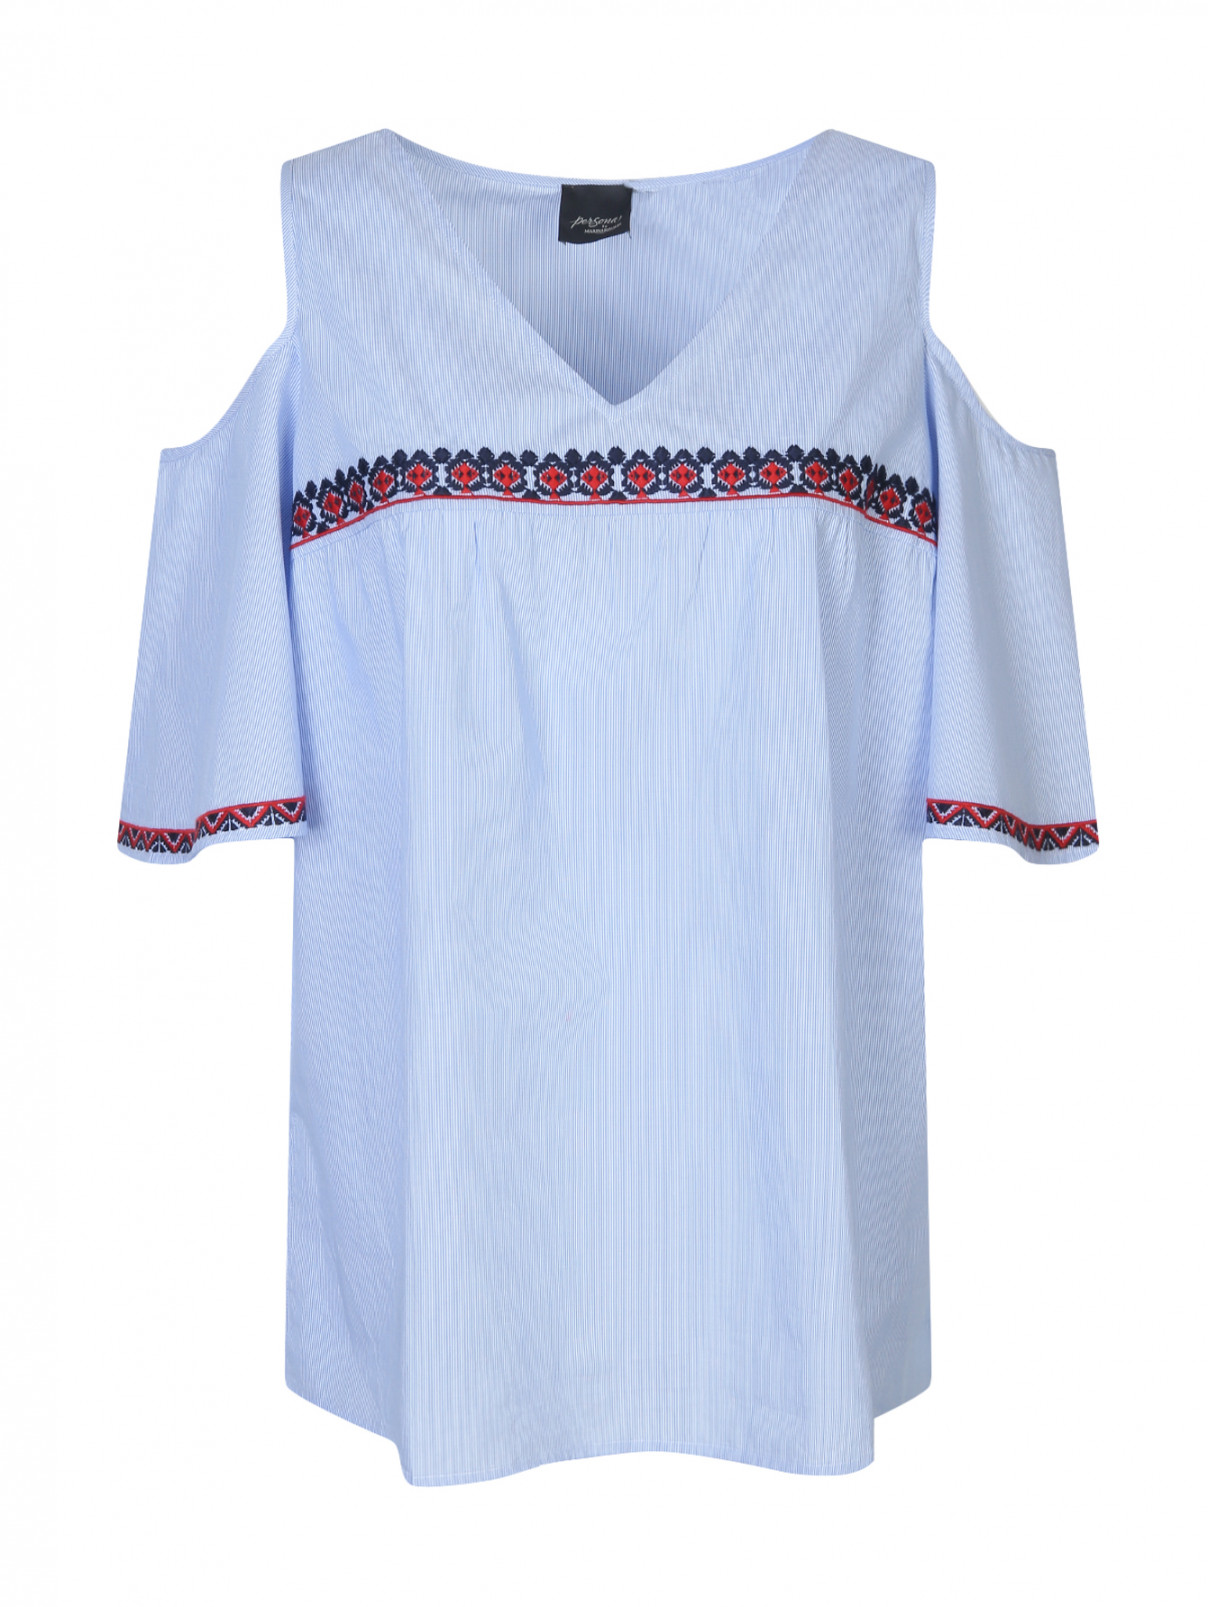 Блуза из хлопка с вышивкой Persona by Marina Rinaldi  –  Общий вид  – Цвет:  Синий